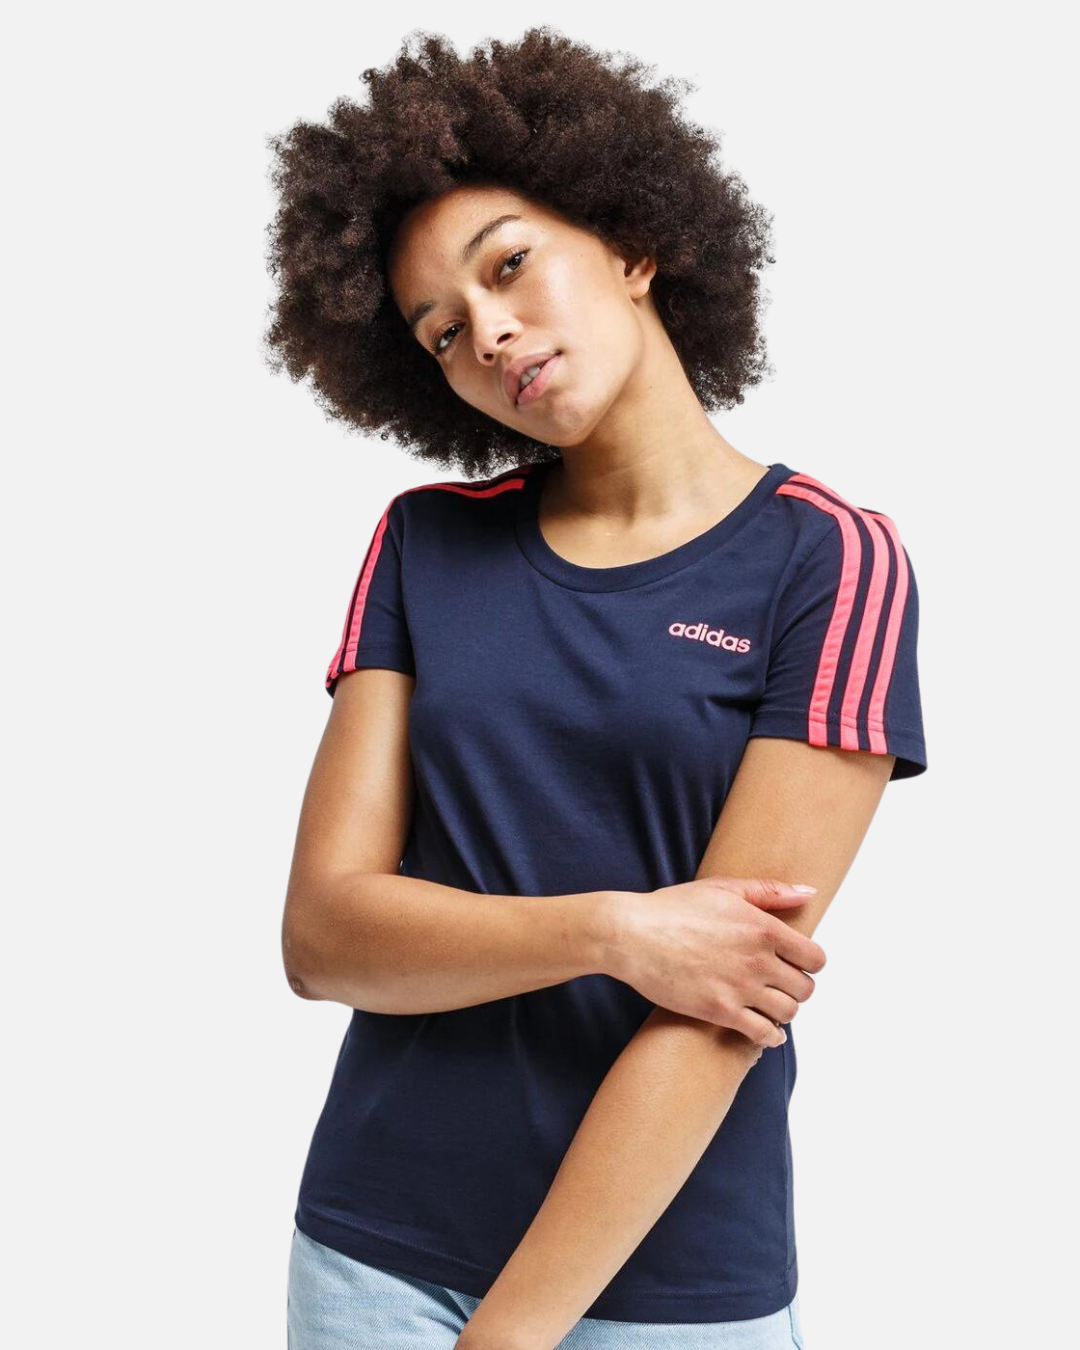 Adidas 3 Stripes Women's T-Shirt - Blue/Pink